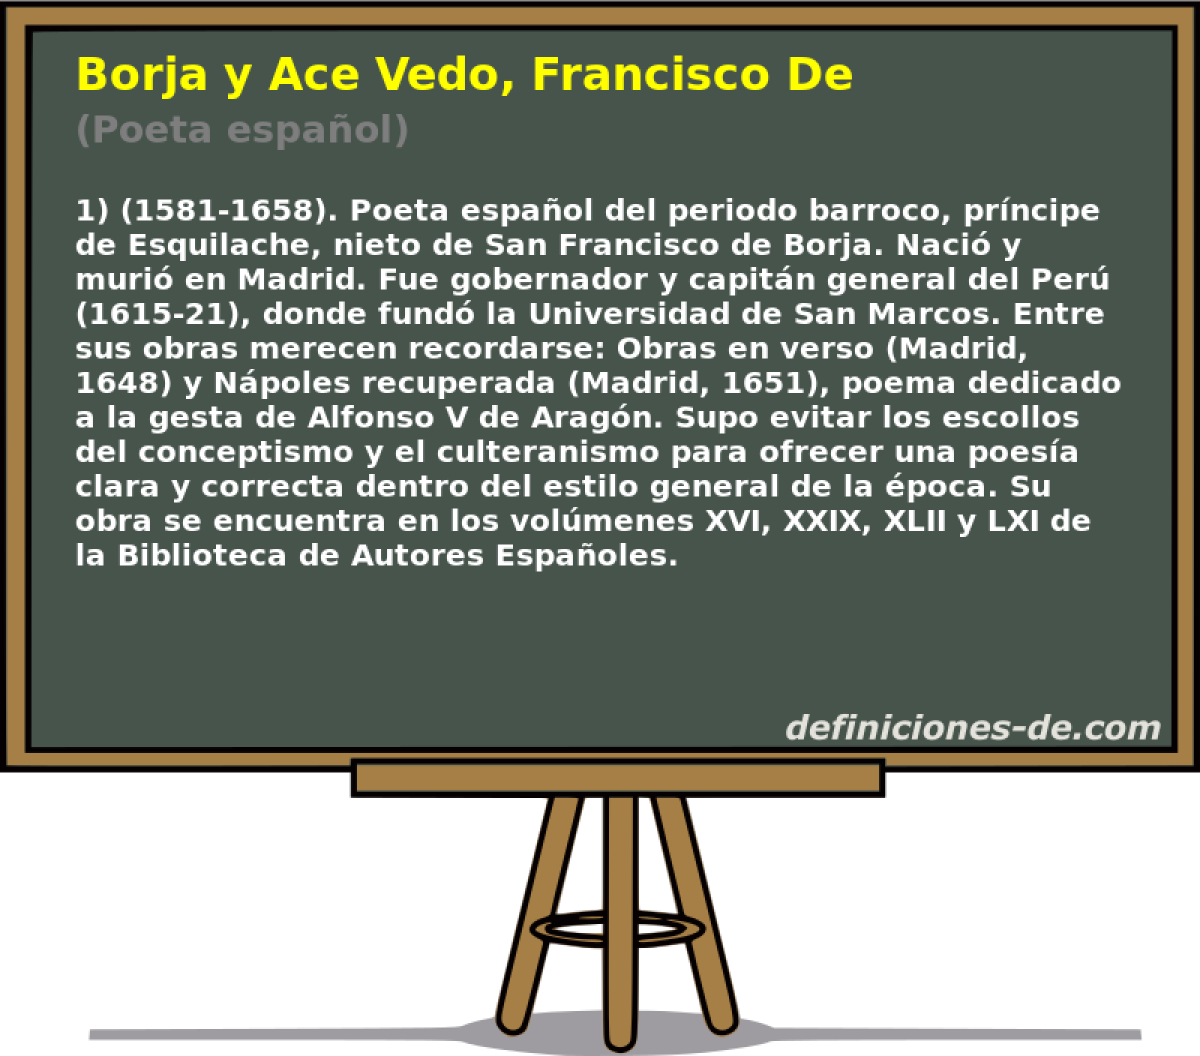 Borja y Ace Vedo, Francisco De (Poeta espaol)